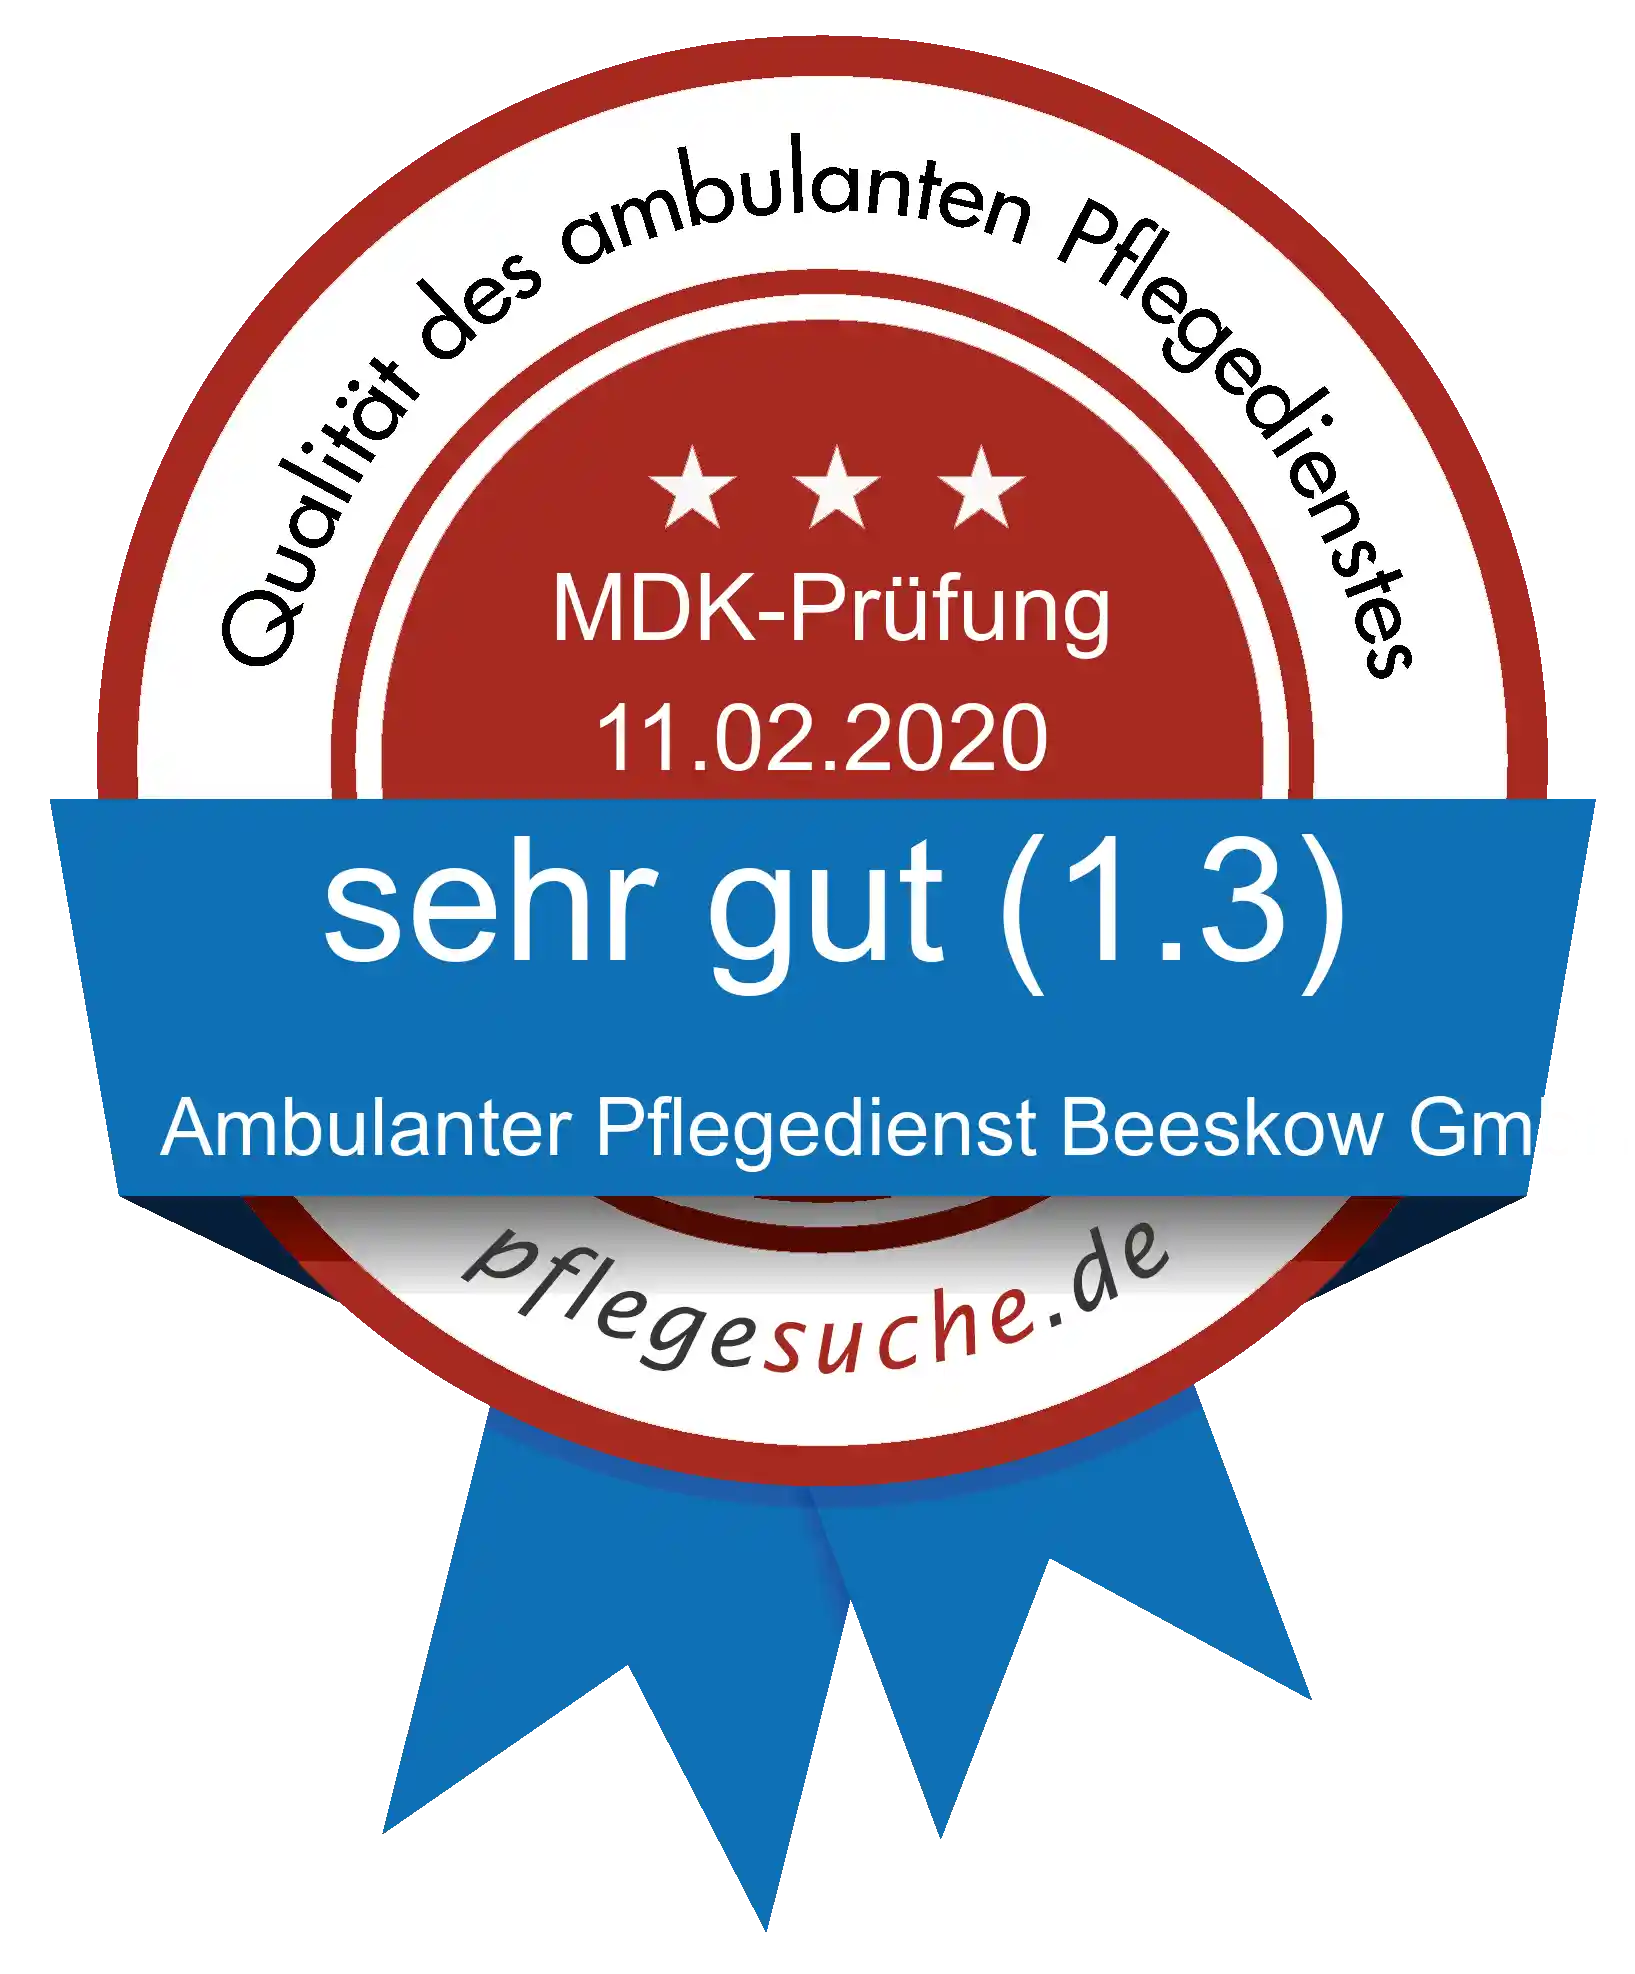 Siegel Benotung: Ambulanter Pflegedienst Beeskow GmbH